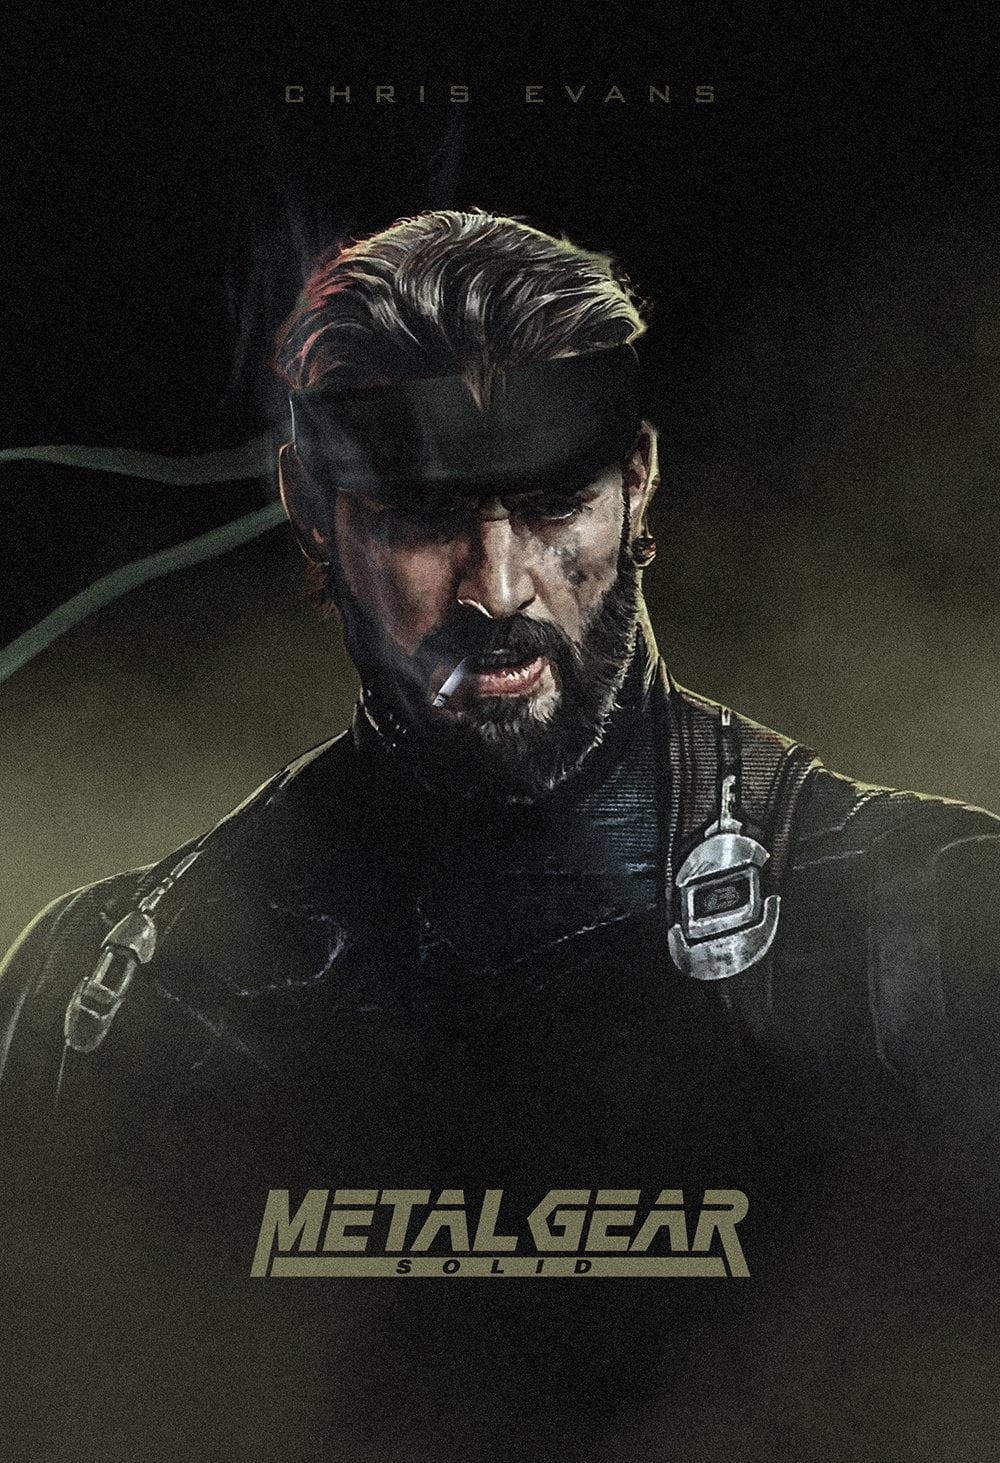 Metal Gear Video Games Chris Evans Metal Gear Solid V